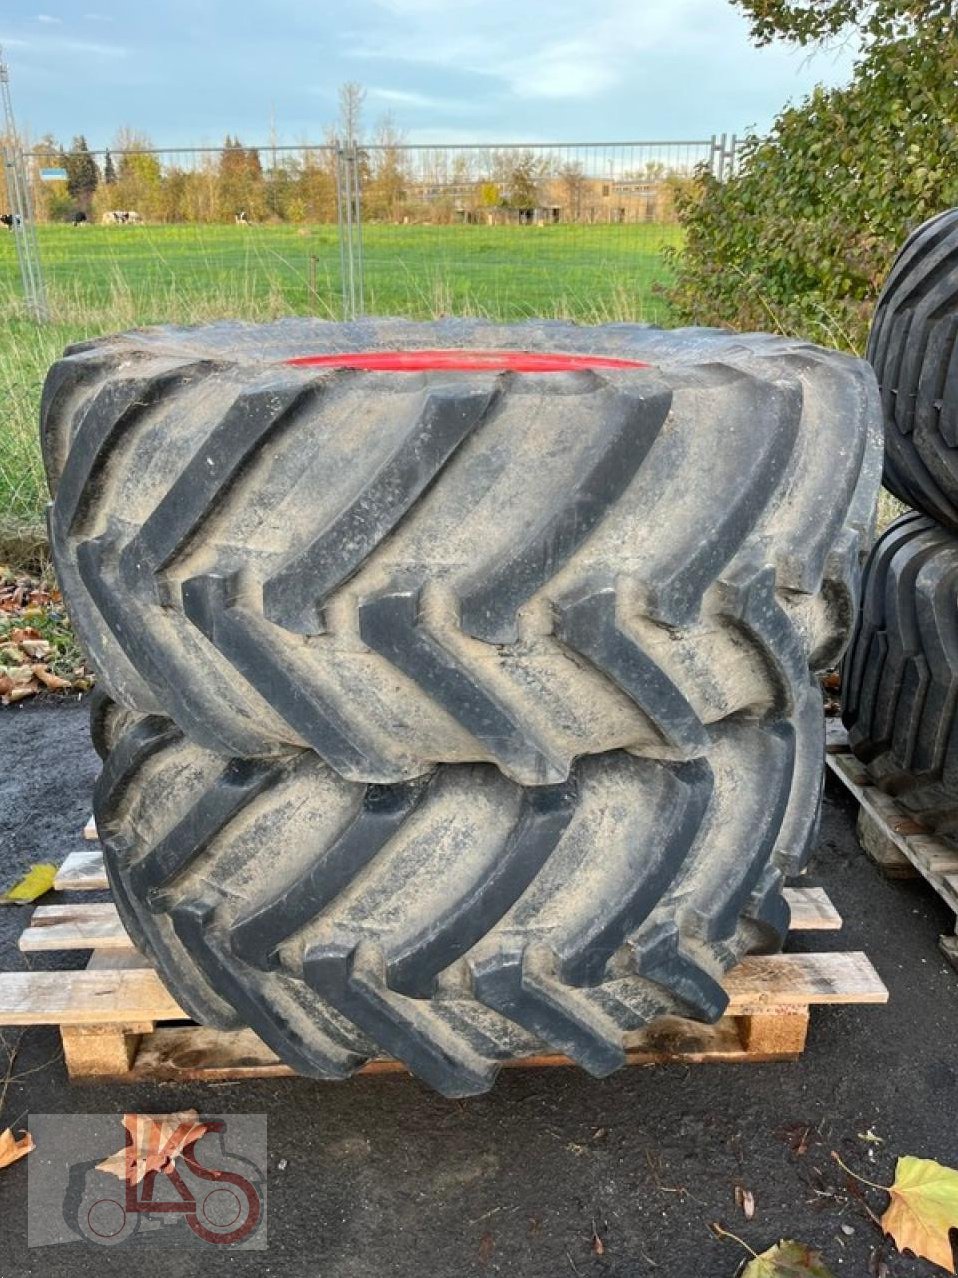 Reifen des Typs Michelin 500/70 R24 XMCL, Gebrauchtmaschine in Starkenberg (Bild 1)